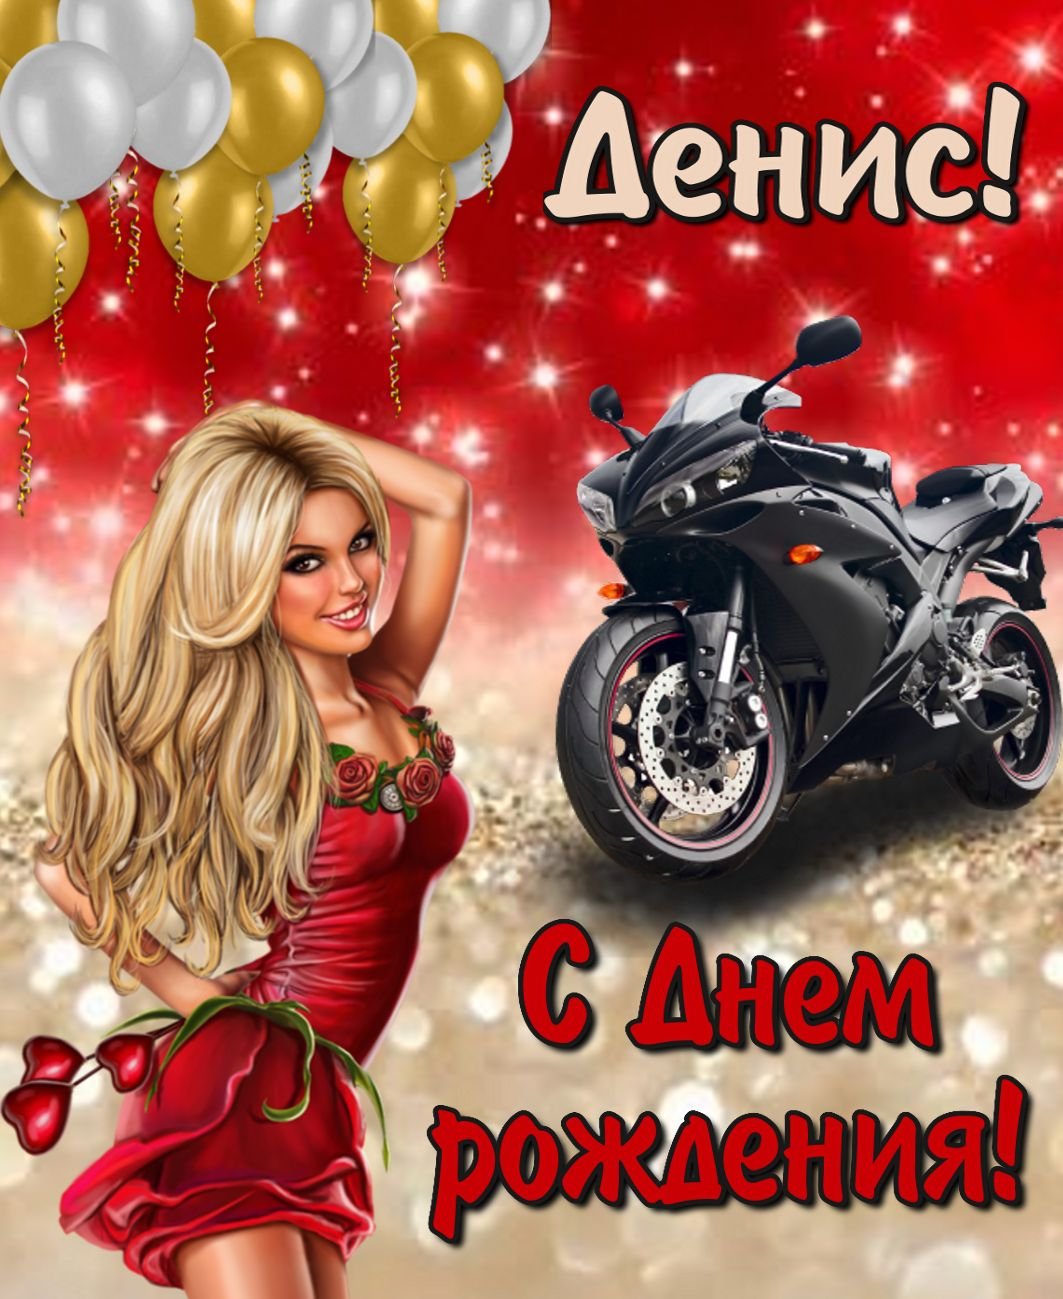 Денис Майданов сегодня отмечает День рождения! 🎂 Наши поздравления! | Денис Майданов | ВКонтакте